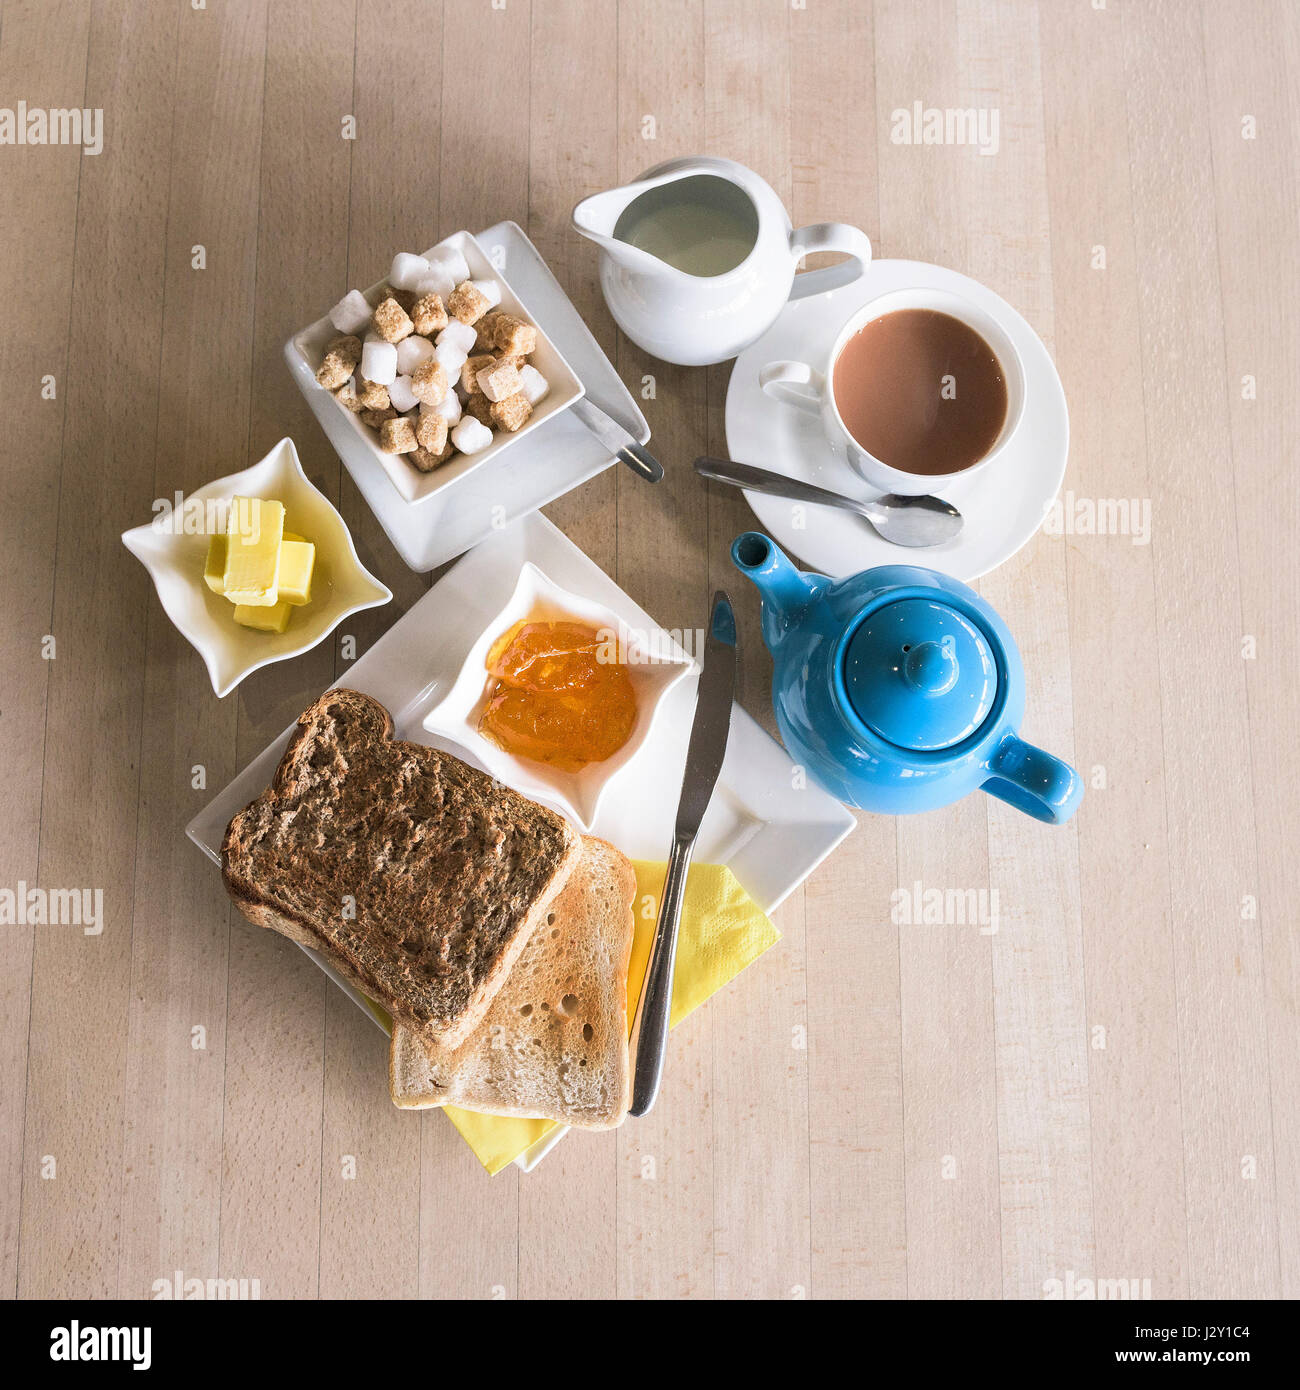 Piatti per la colazione tè toast e marmellata fette biscottate teiera stoviglie pasto mattutino; ristorante Cafe vista aerea Foto Stock